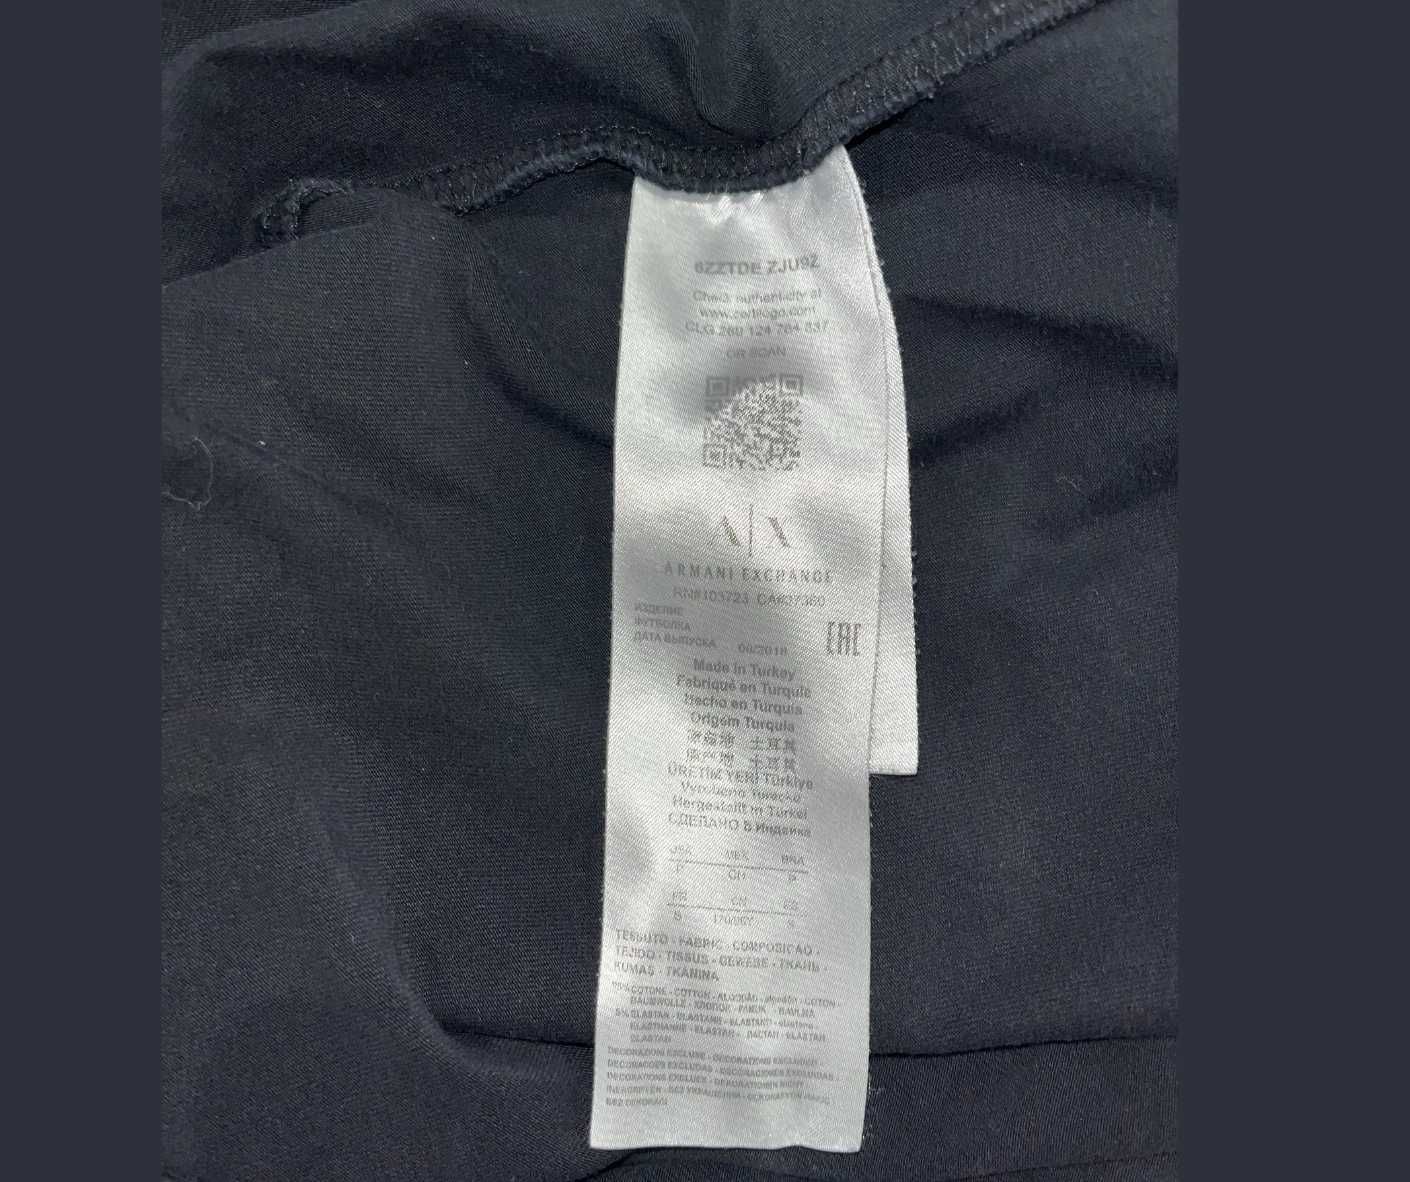 ТОП: Мъжка Тениска Armani Exchange, размер S (XS)